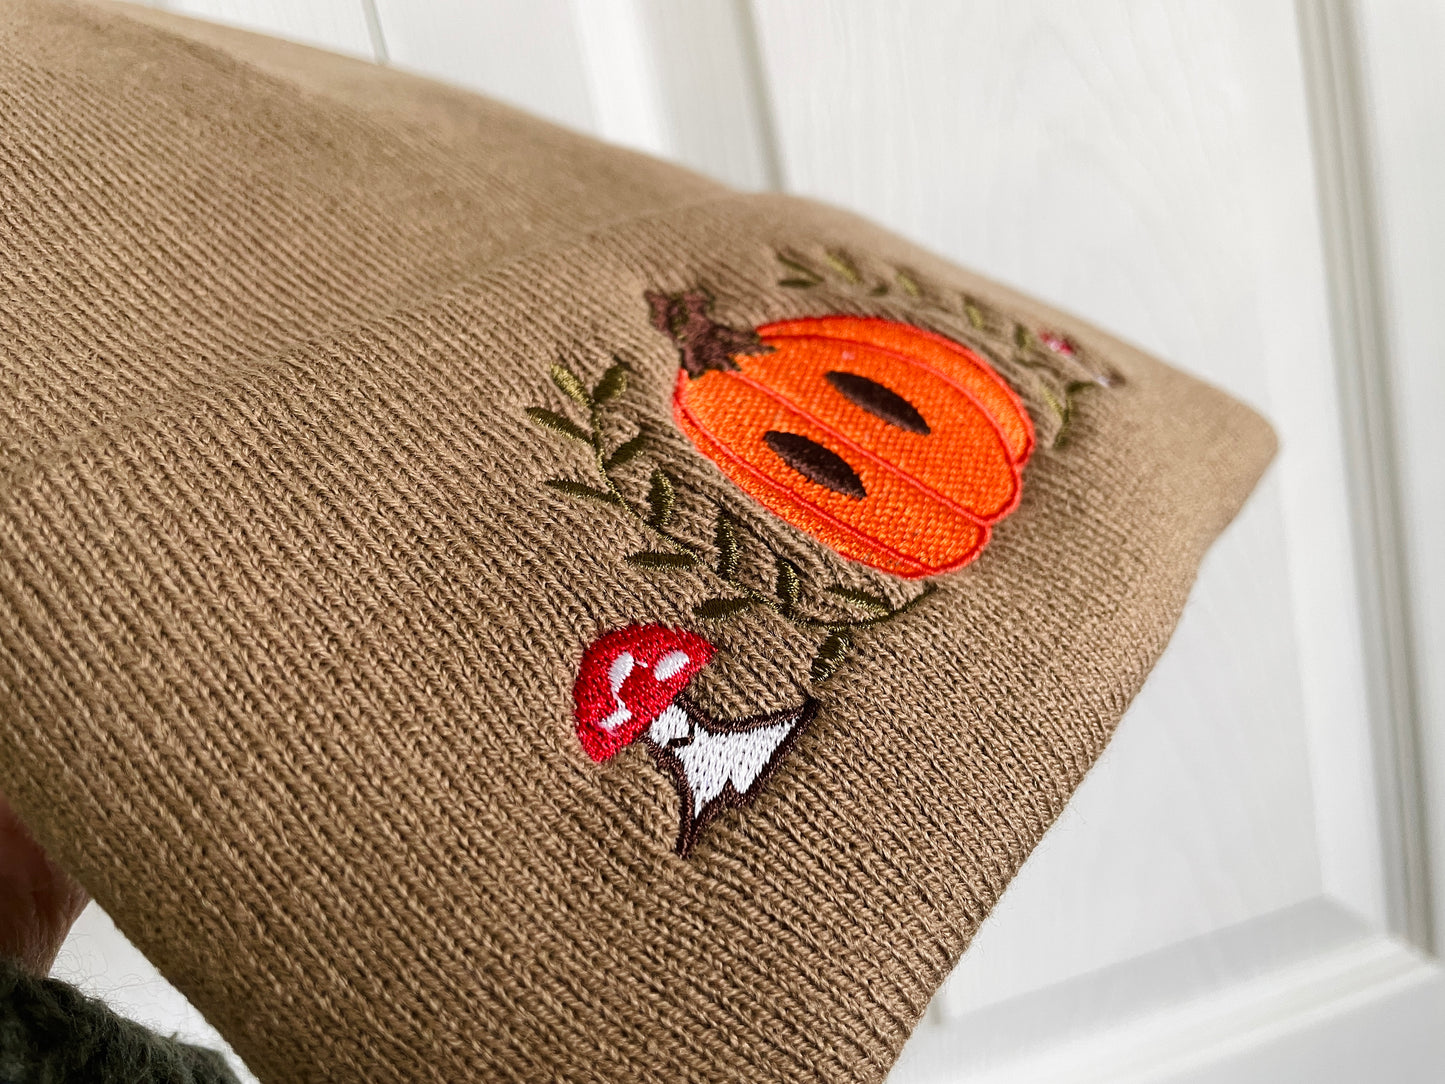 Embroidered Fall Mr. Pumpkin Beanie